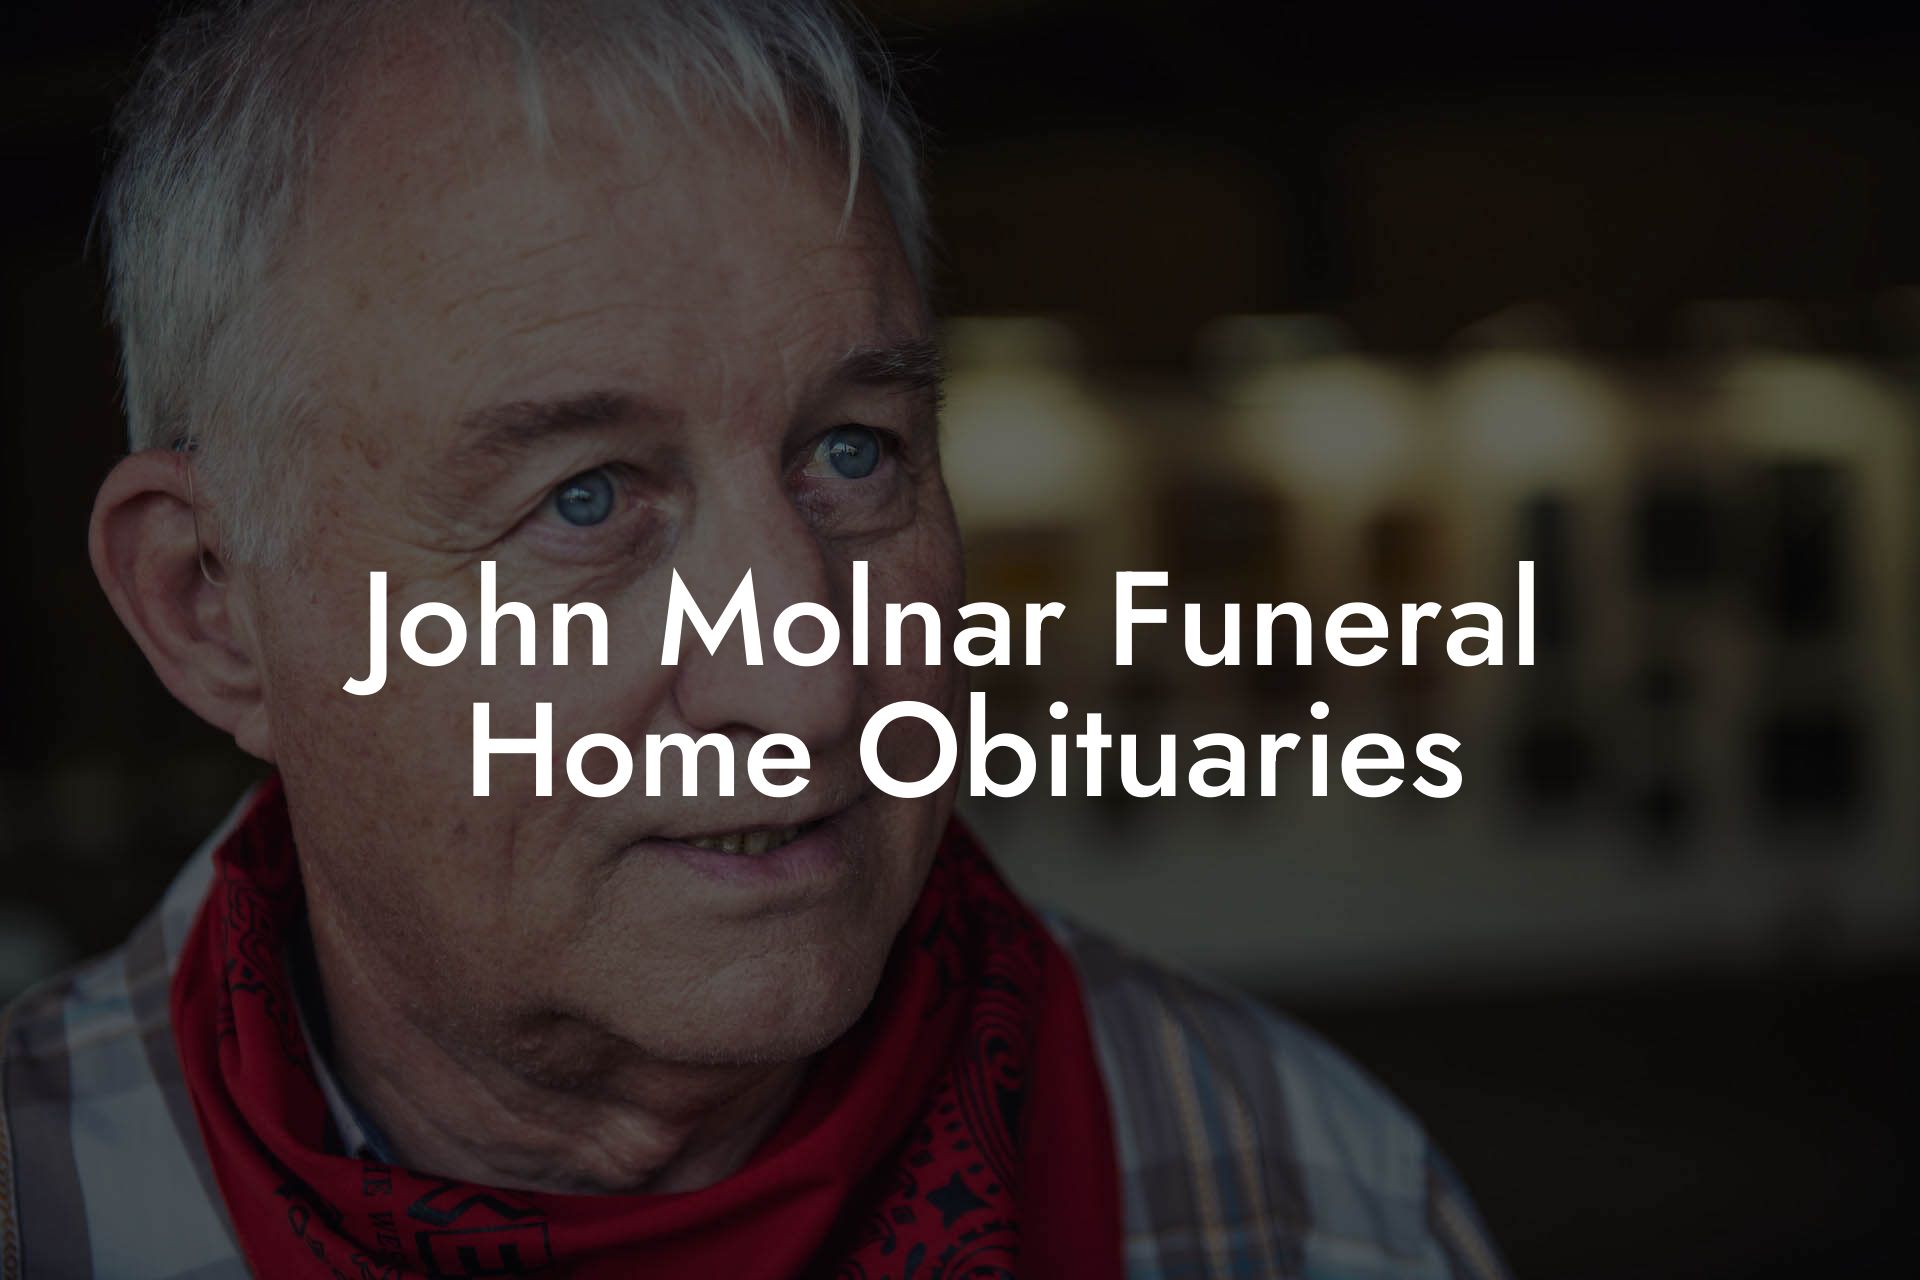 John Molnar Funeral Home Obituaries